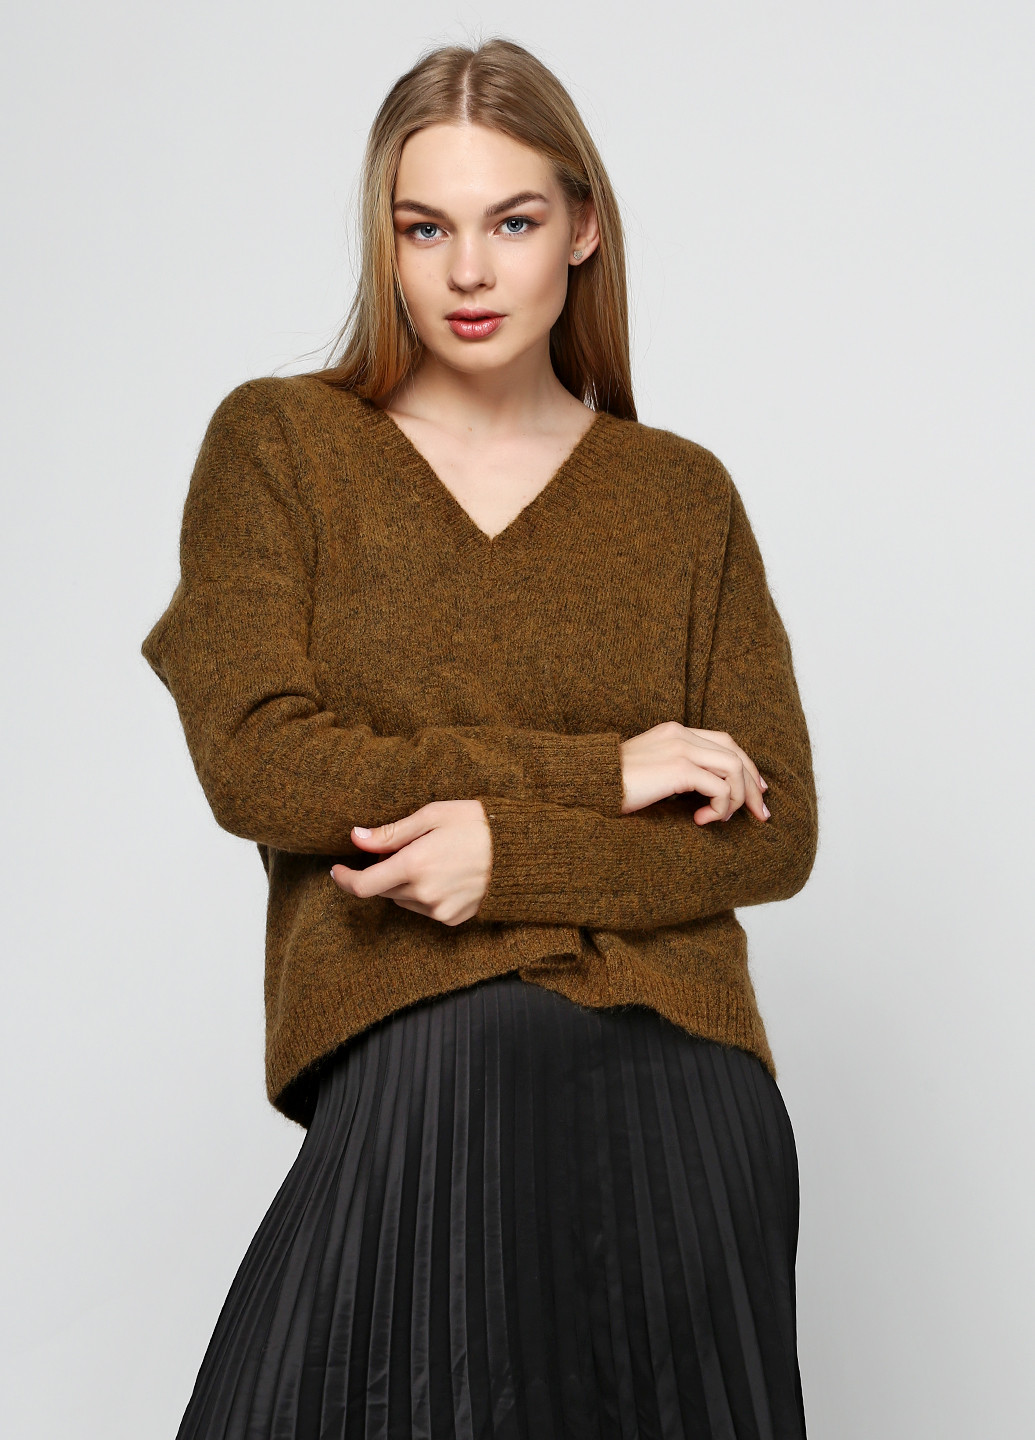 Оливковый (хаки) демисезонный пуловер пуловер Gestuz